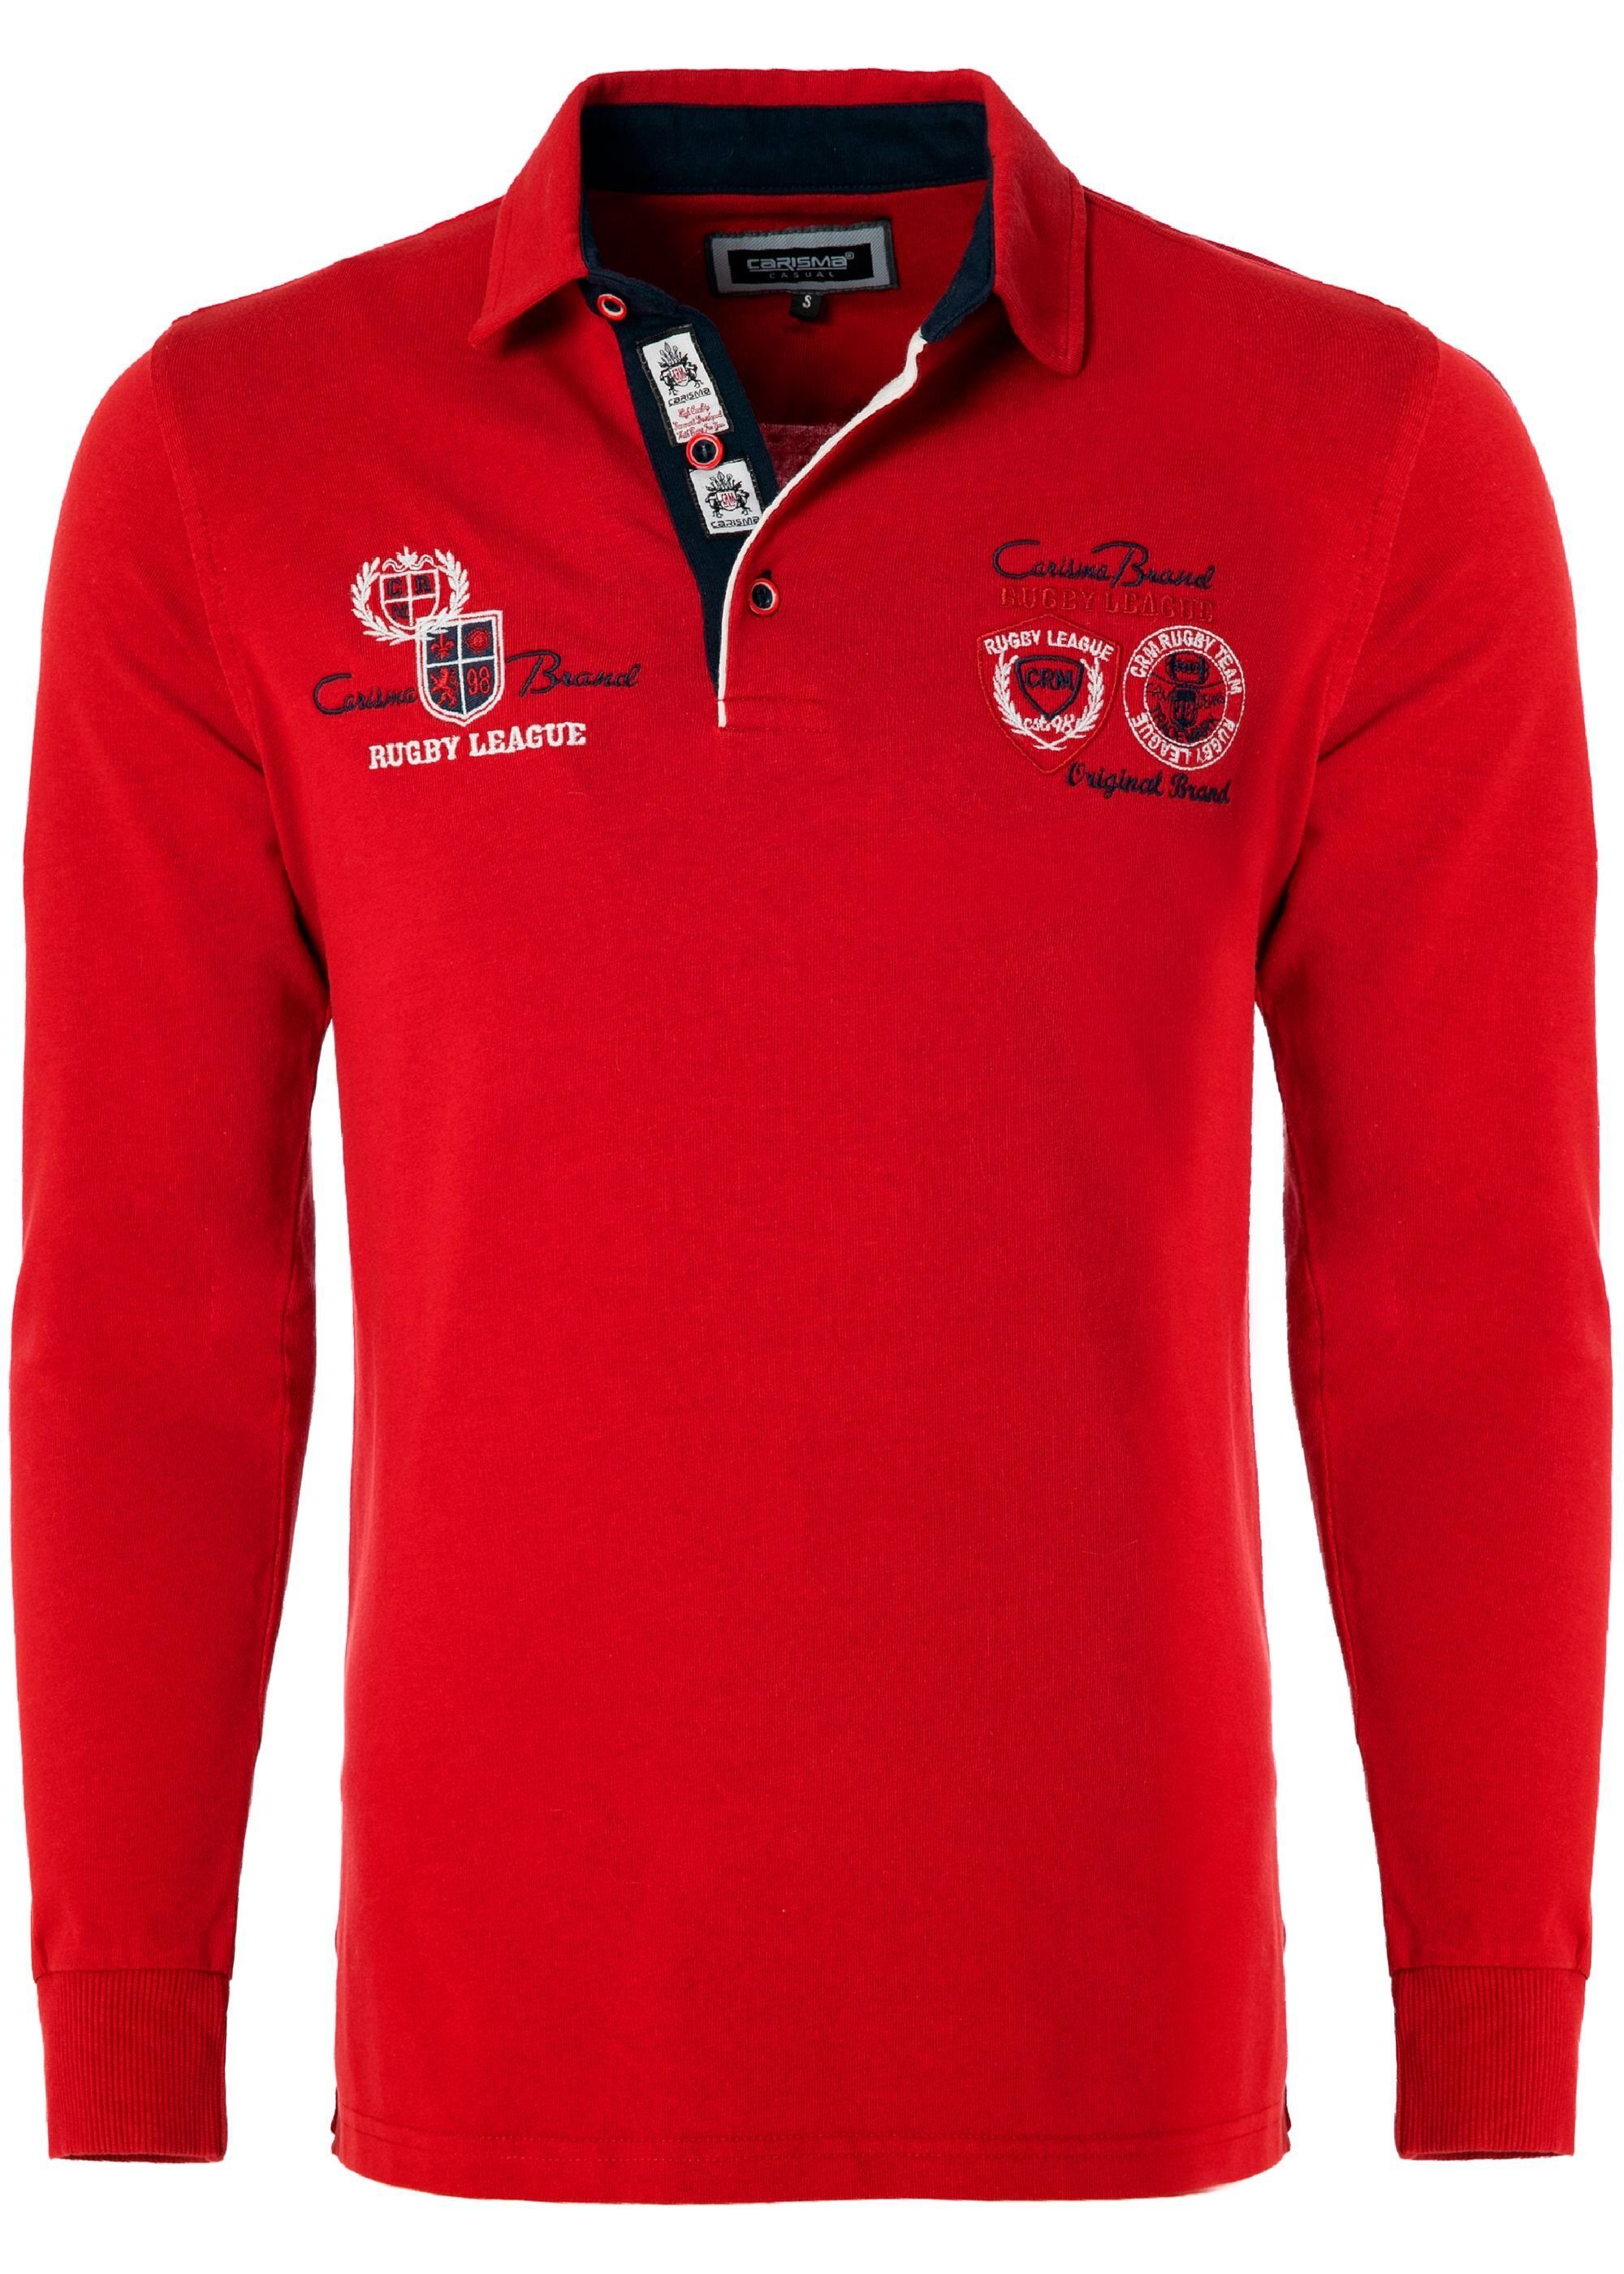 Angebot anführen CARISMA Poloshirt Red Rugby mit Stickerei Team